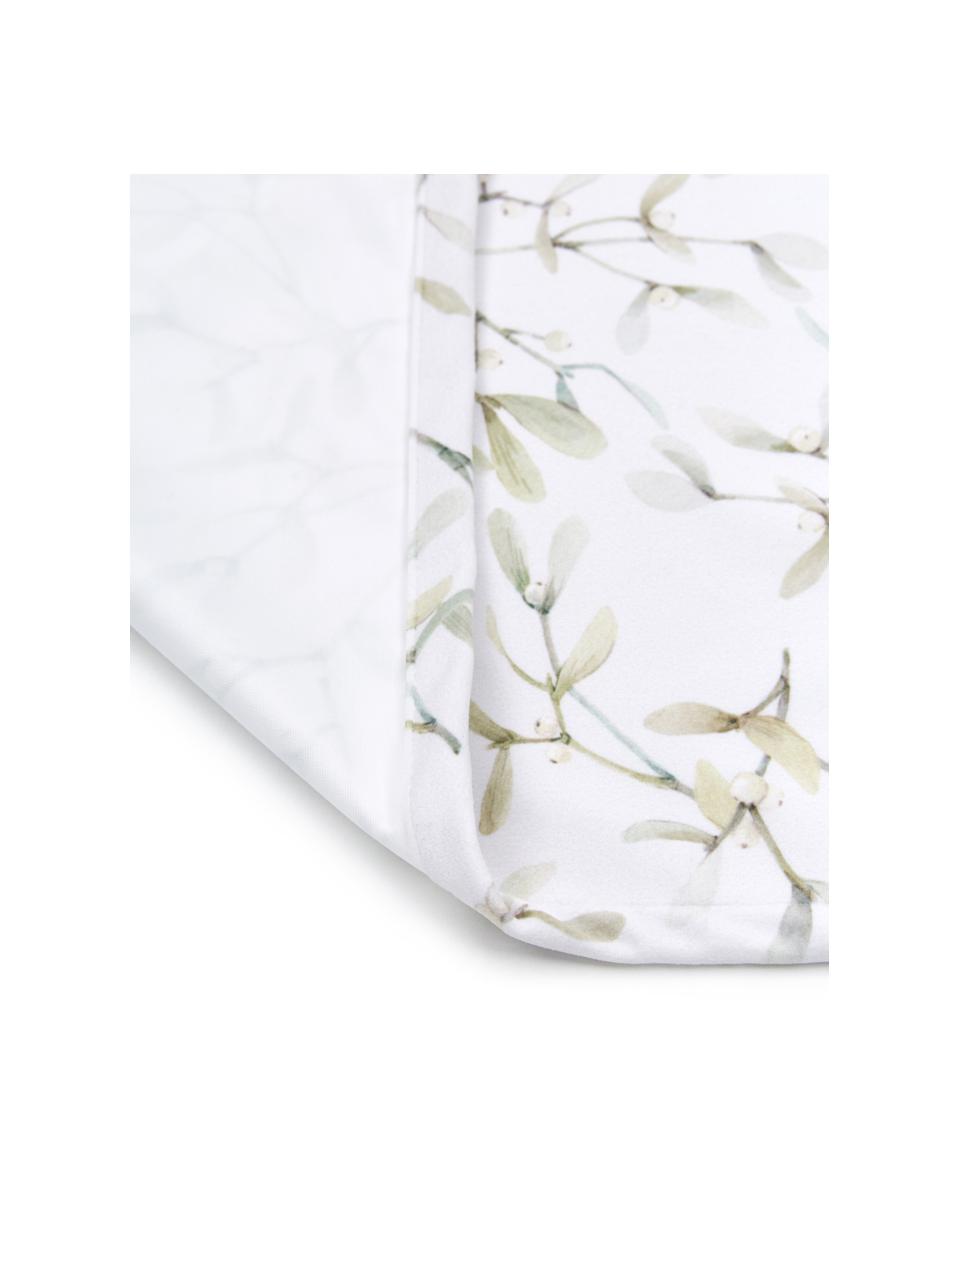 Tischläufer Fairytale mit Mistelzweig-Muster, 100% Polyester, Gebrochenes Weiß, Grüntöne, B 40 x L 145 cm